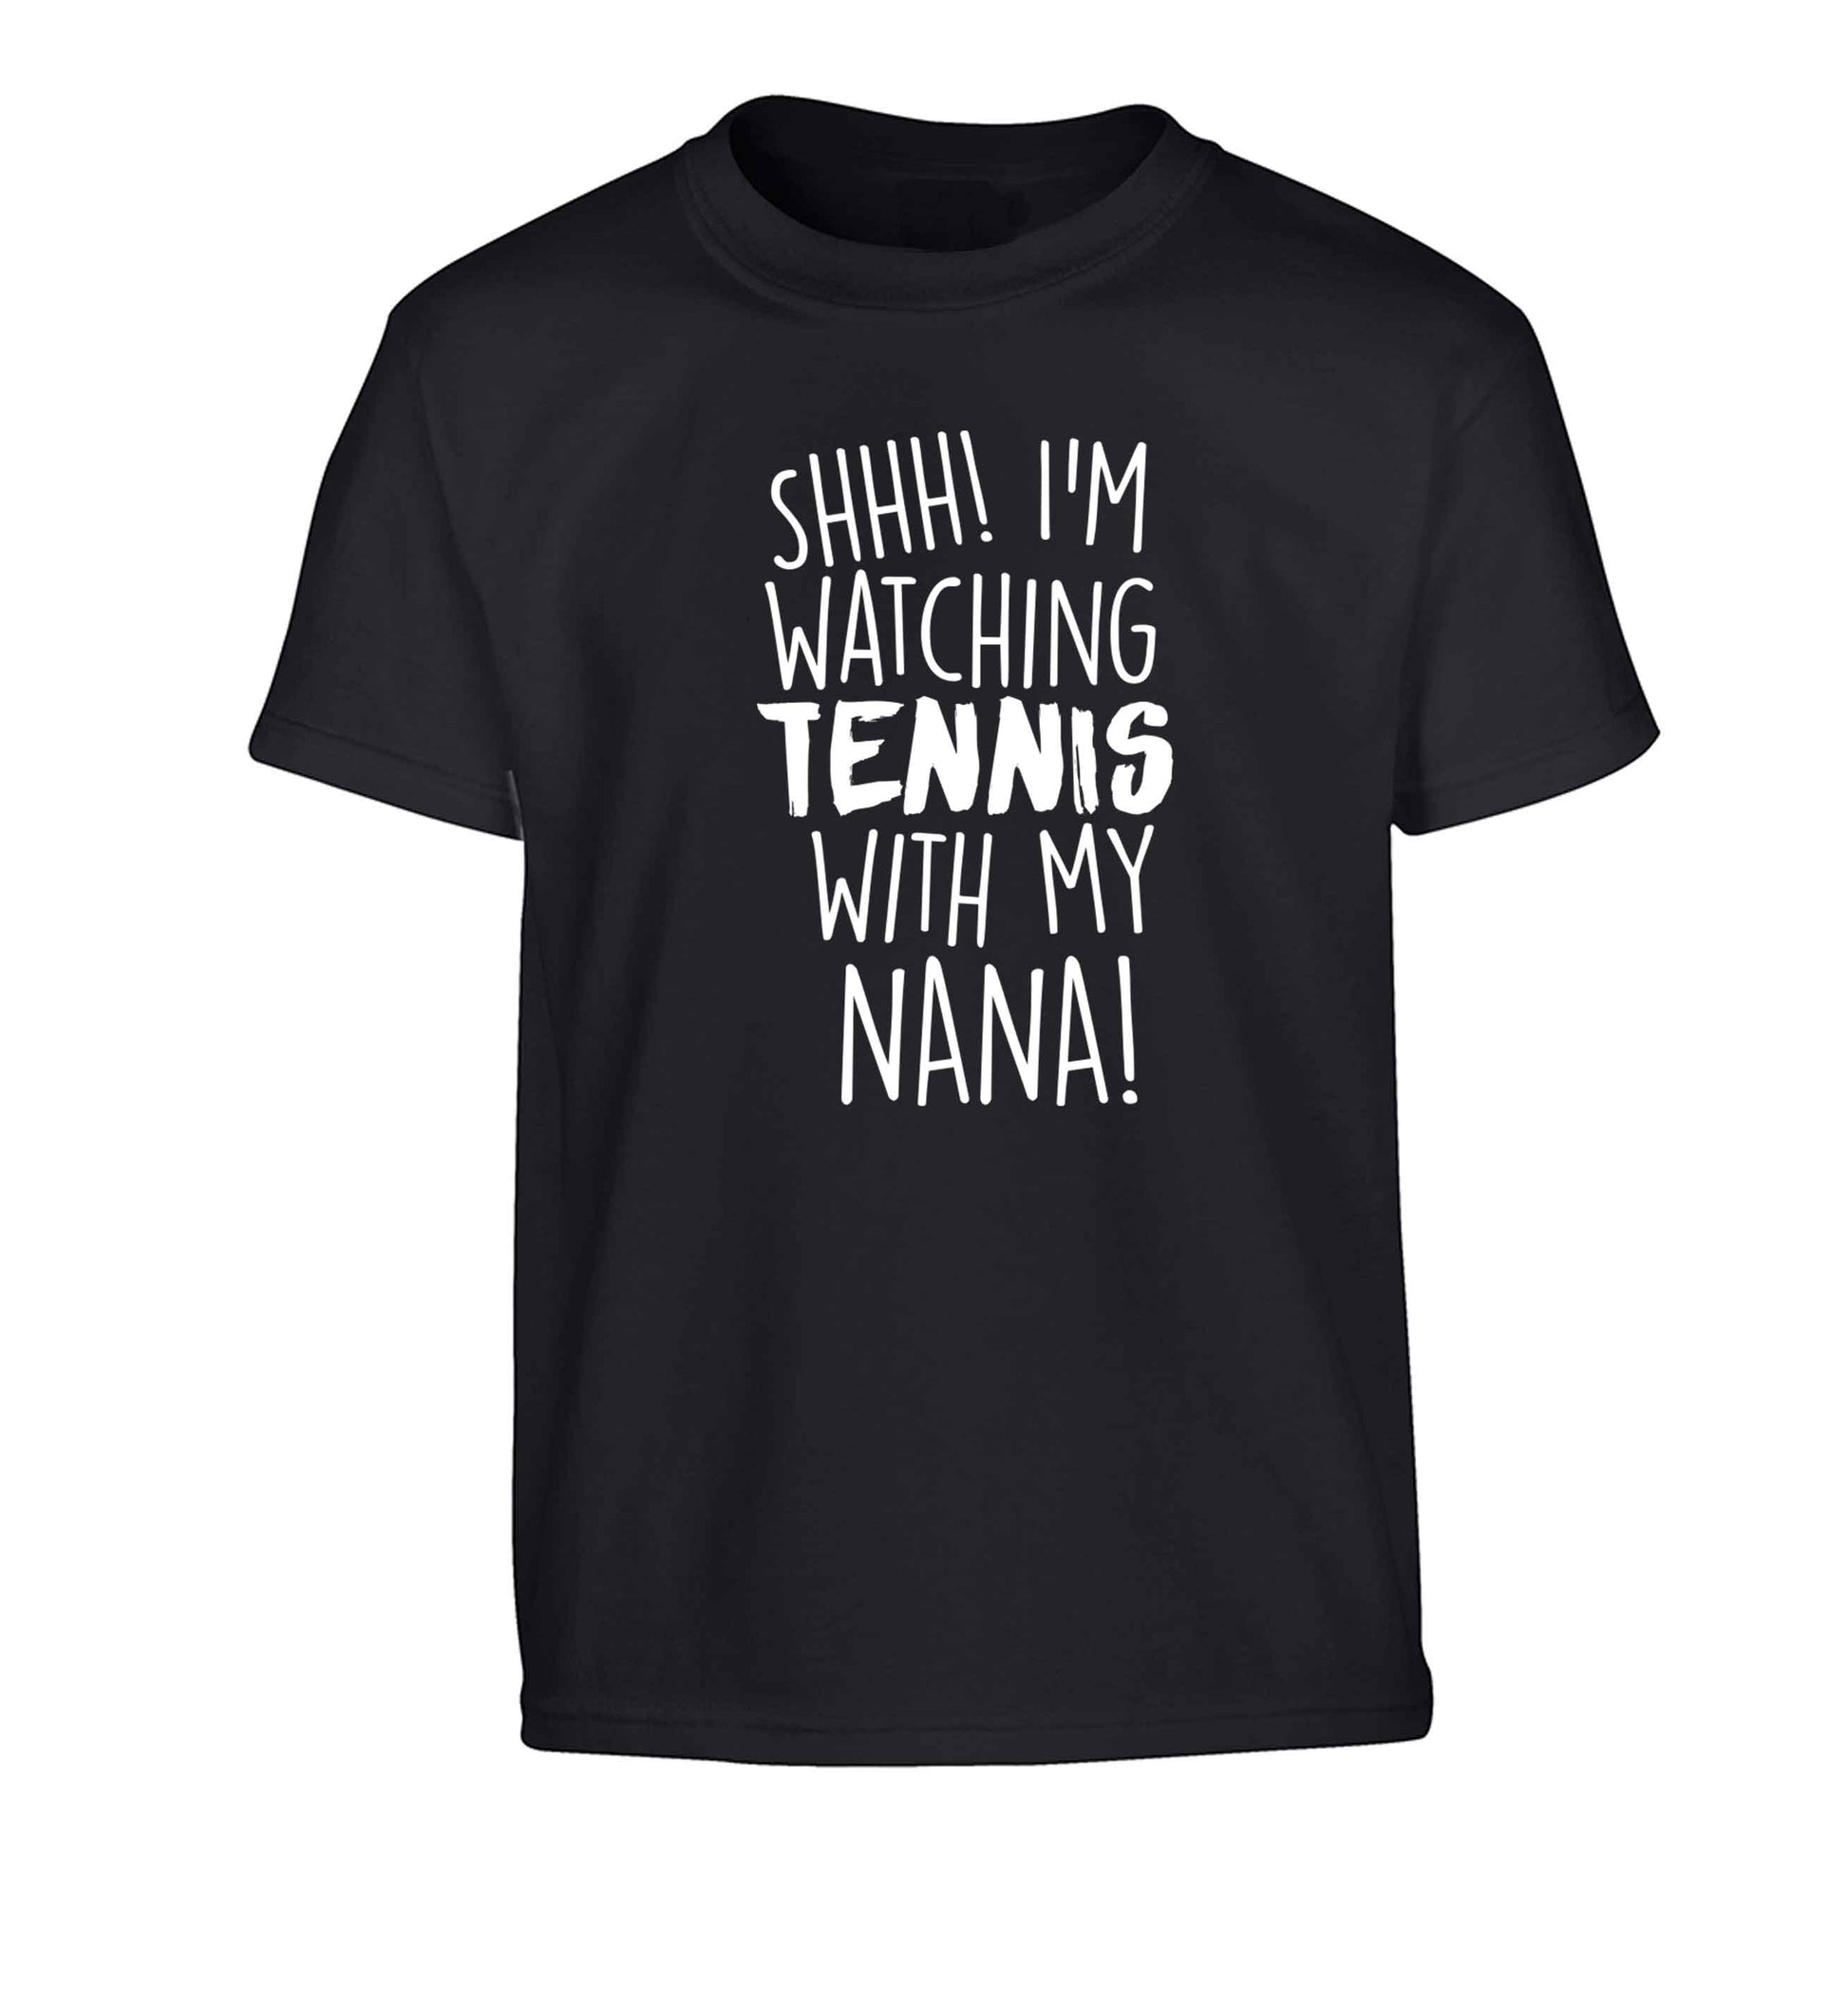 Shh! I'm watching tennis with my nana! Children's black Tshirt 12-13 Years